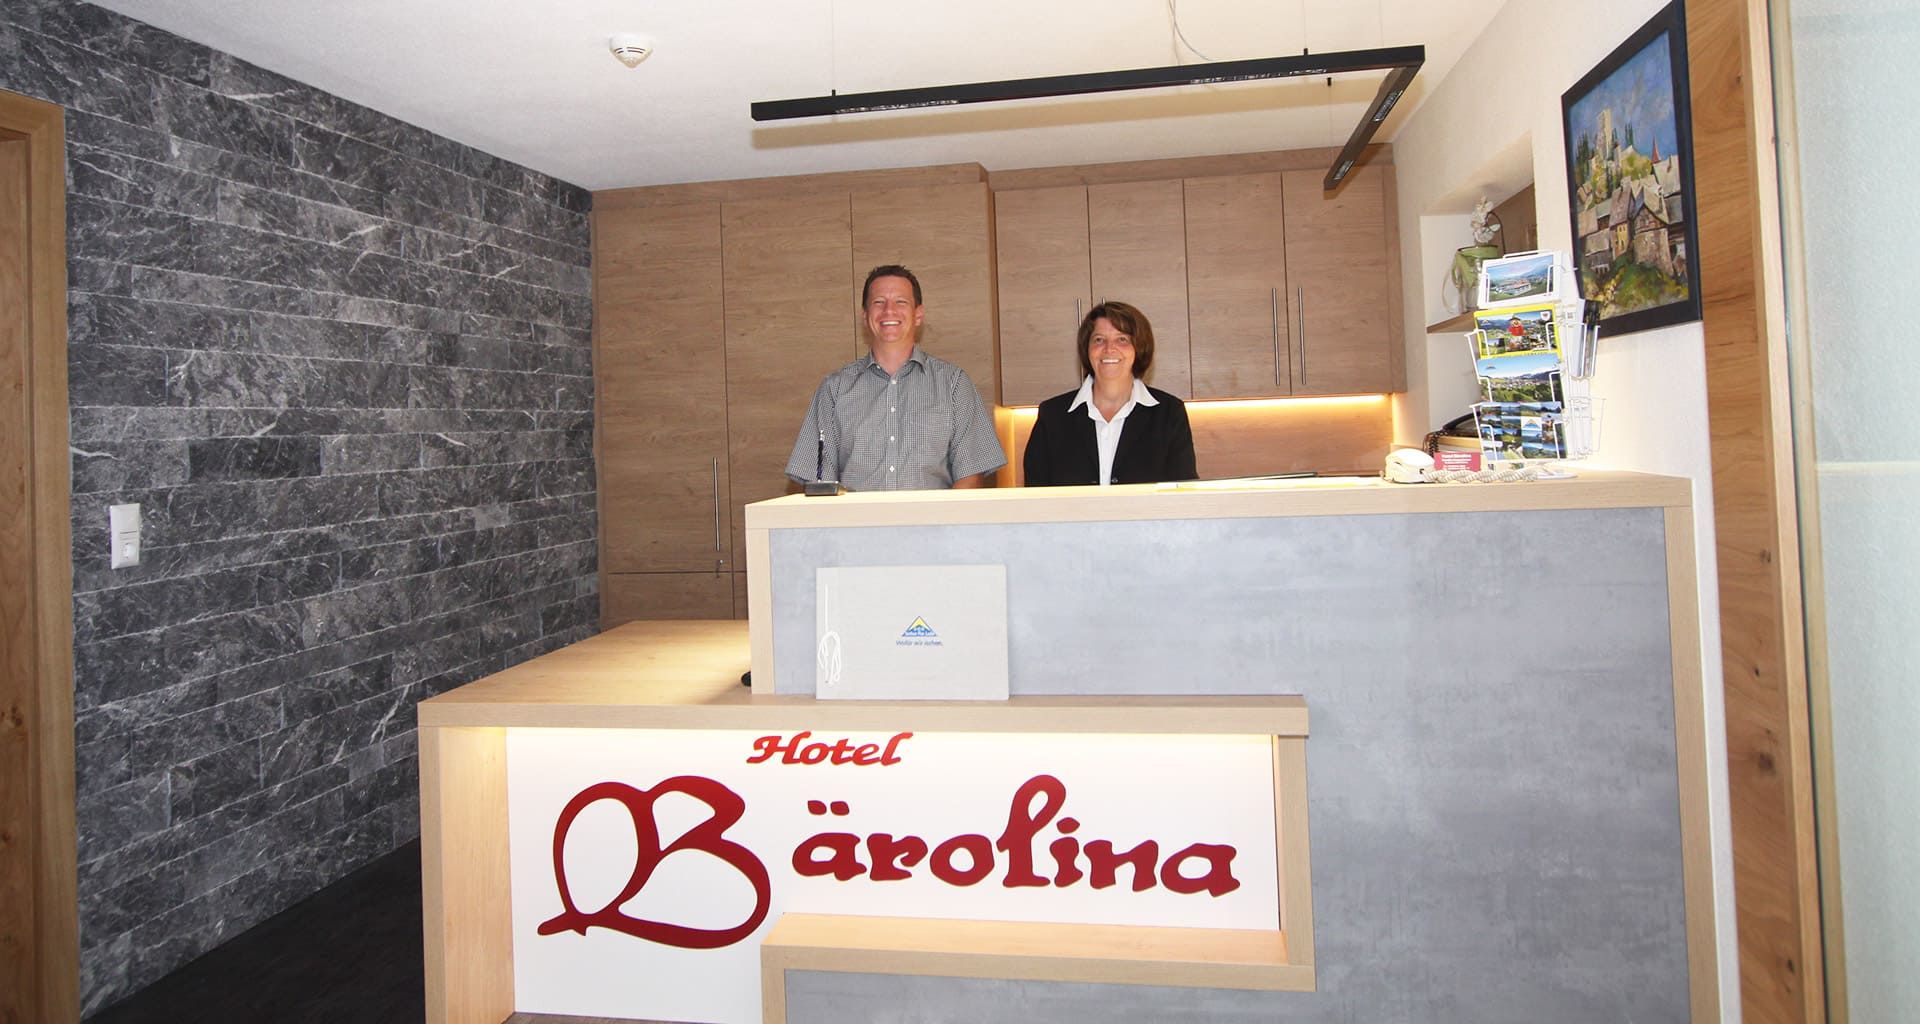 Hotel Bärolina hosts reception Serfaus